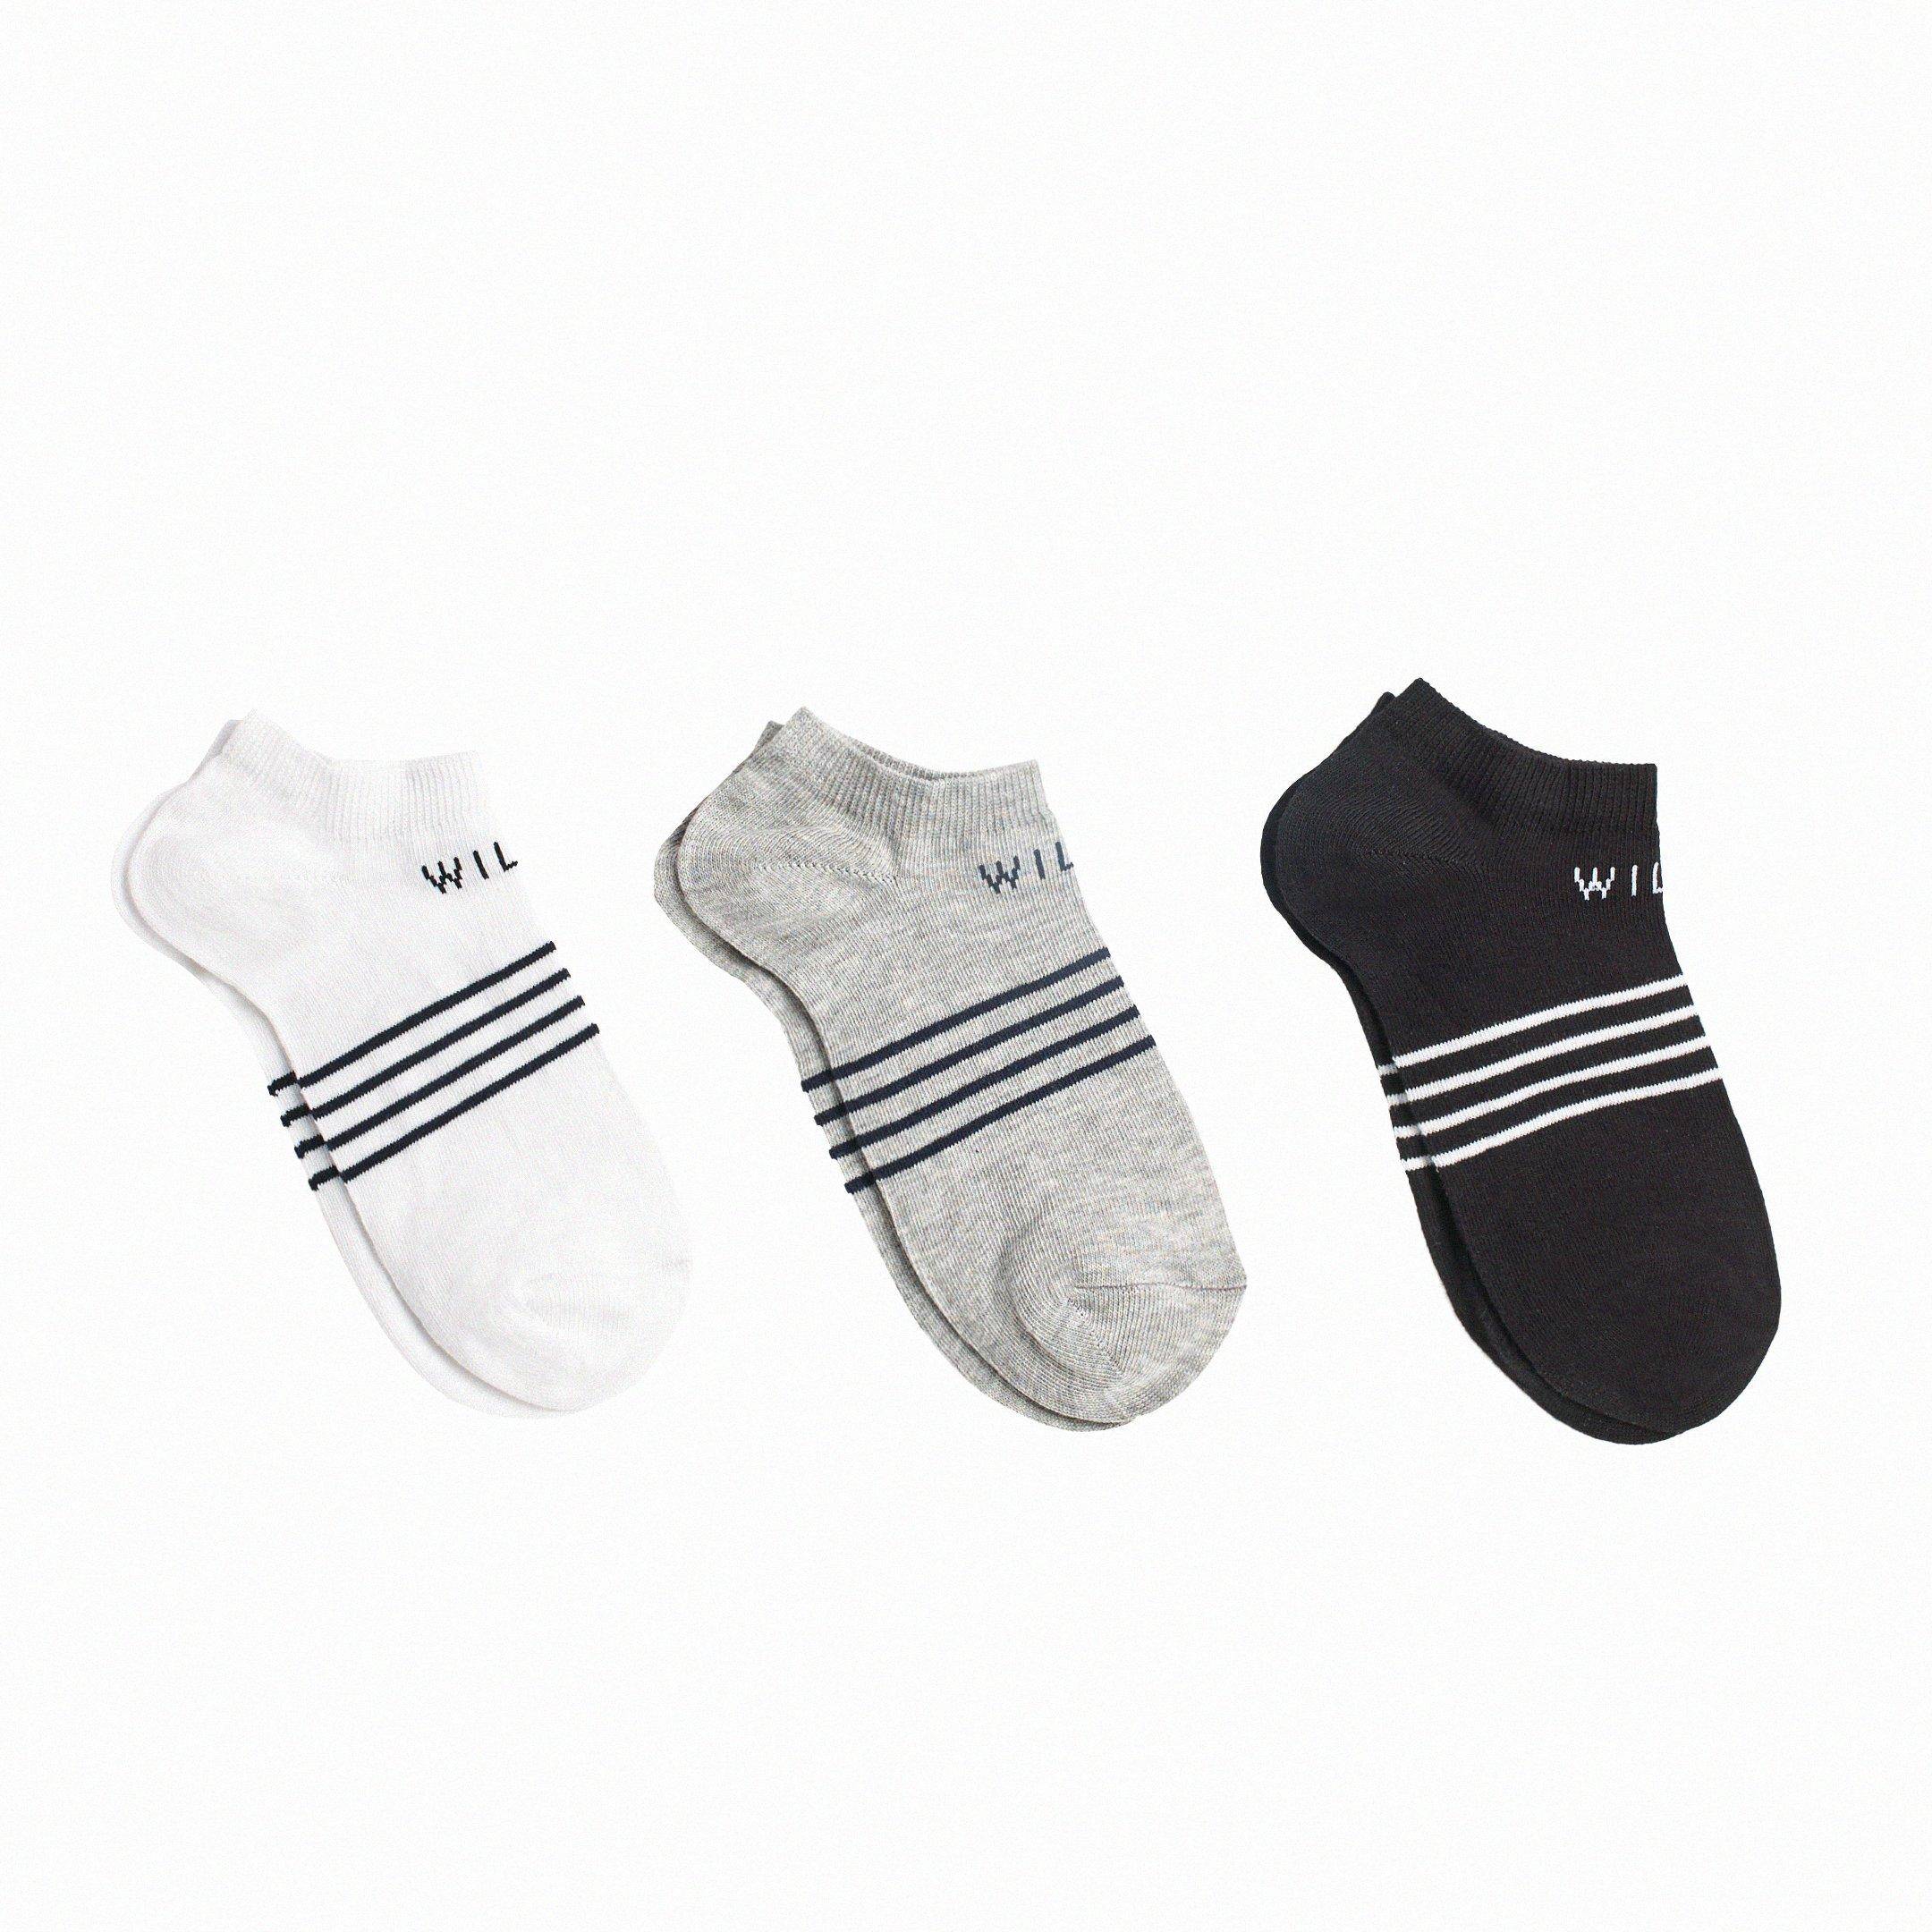 Jack Wills | Tembleton Trainer Multipack Socks 3 Pack | Trainer Socks ...